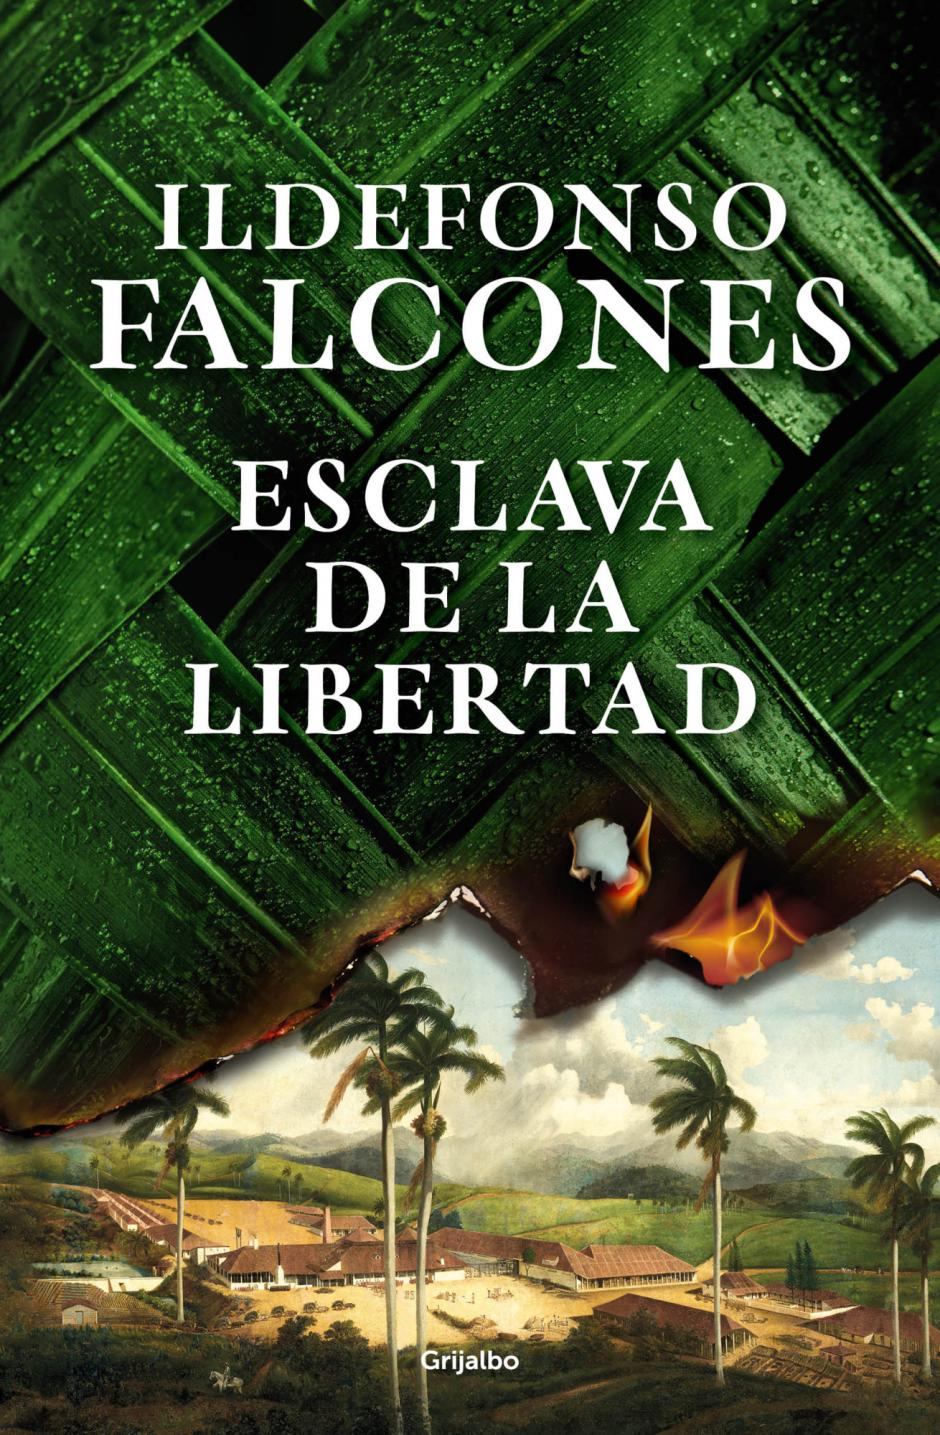 'Esclava de la libertad', la nueva novela de Ildefonso Falcones